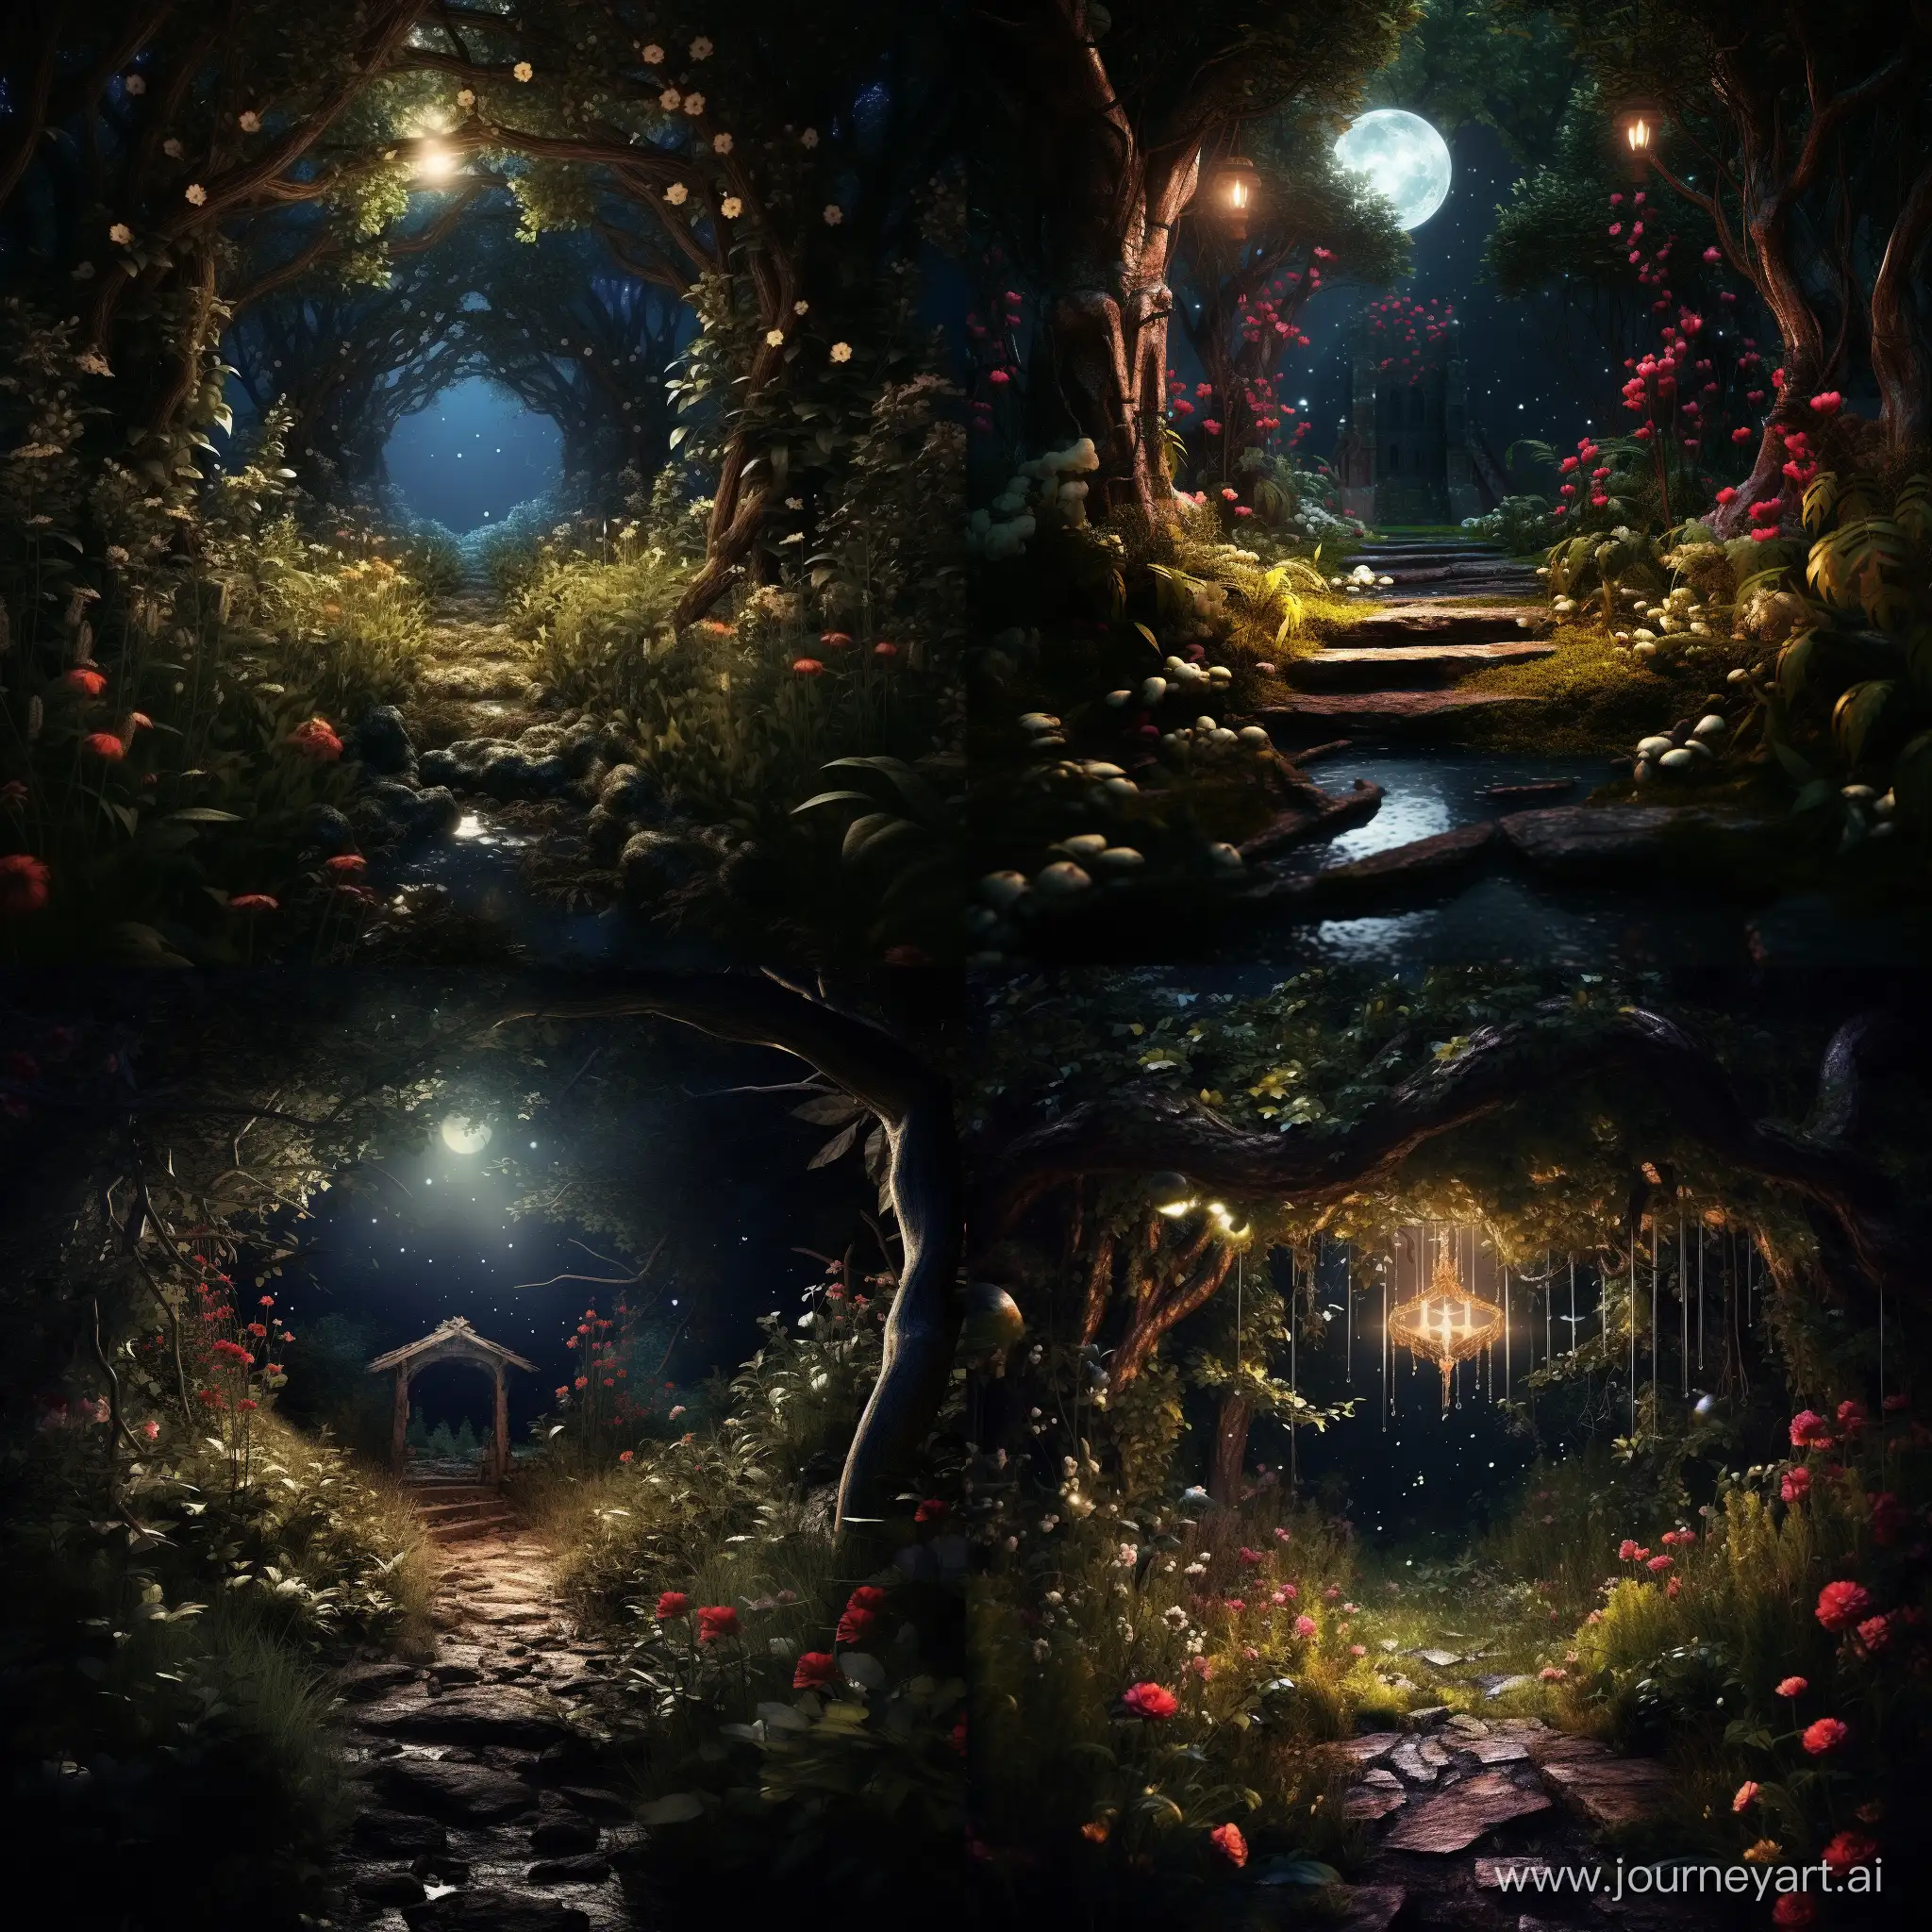 Secret garden in a forbidden forest, dark ambiance, bright moonlight, 4K